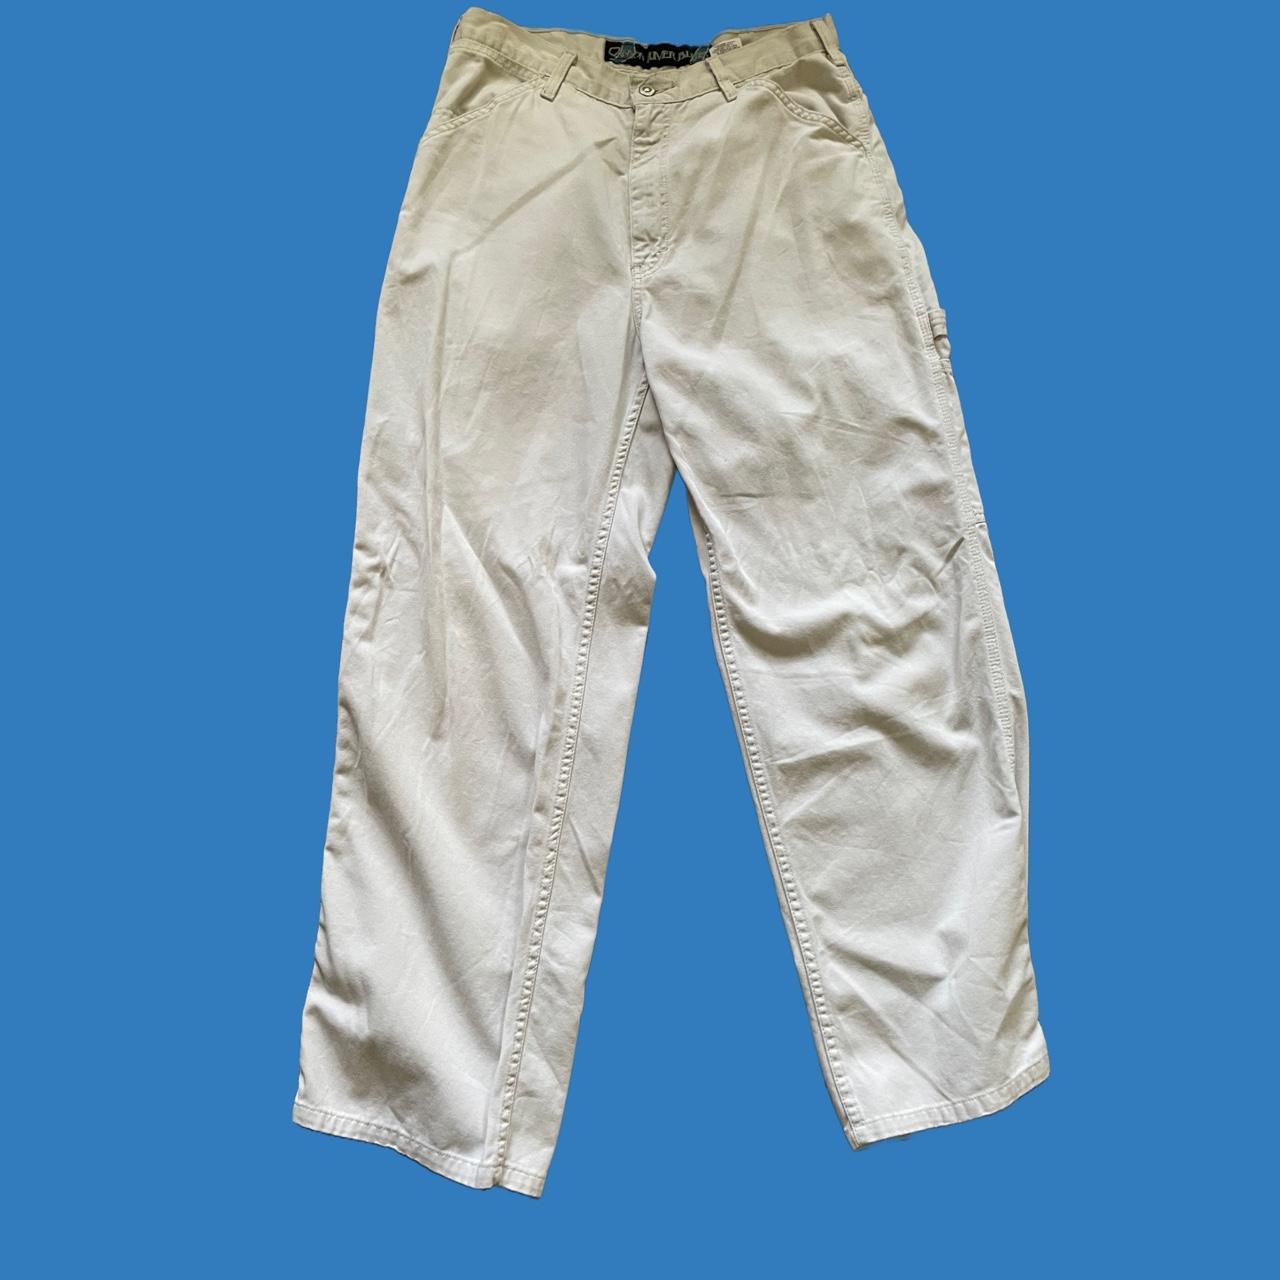 Canyon River Blues Men's White Trousers (3)